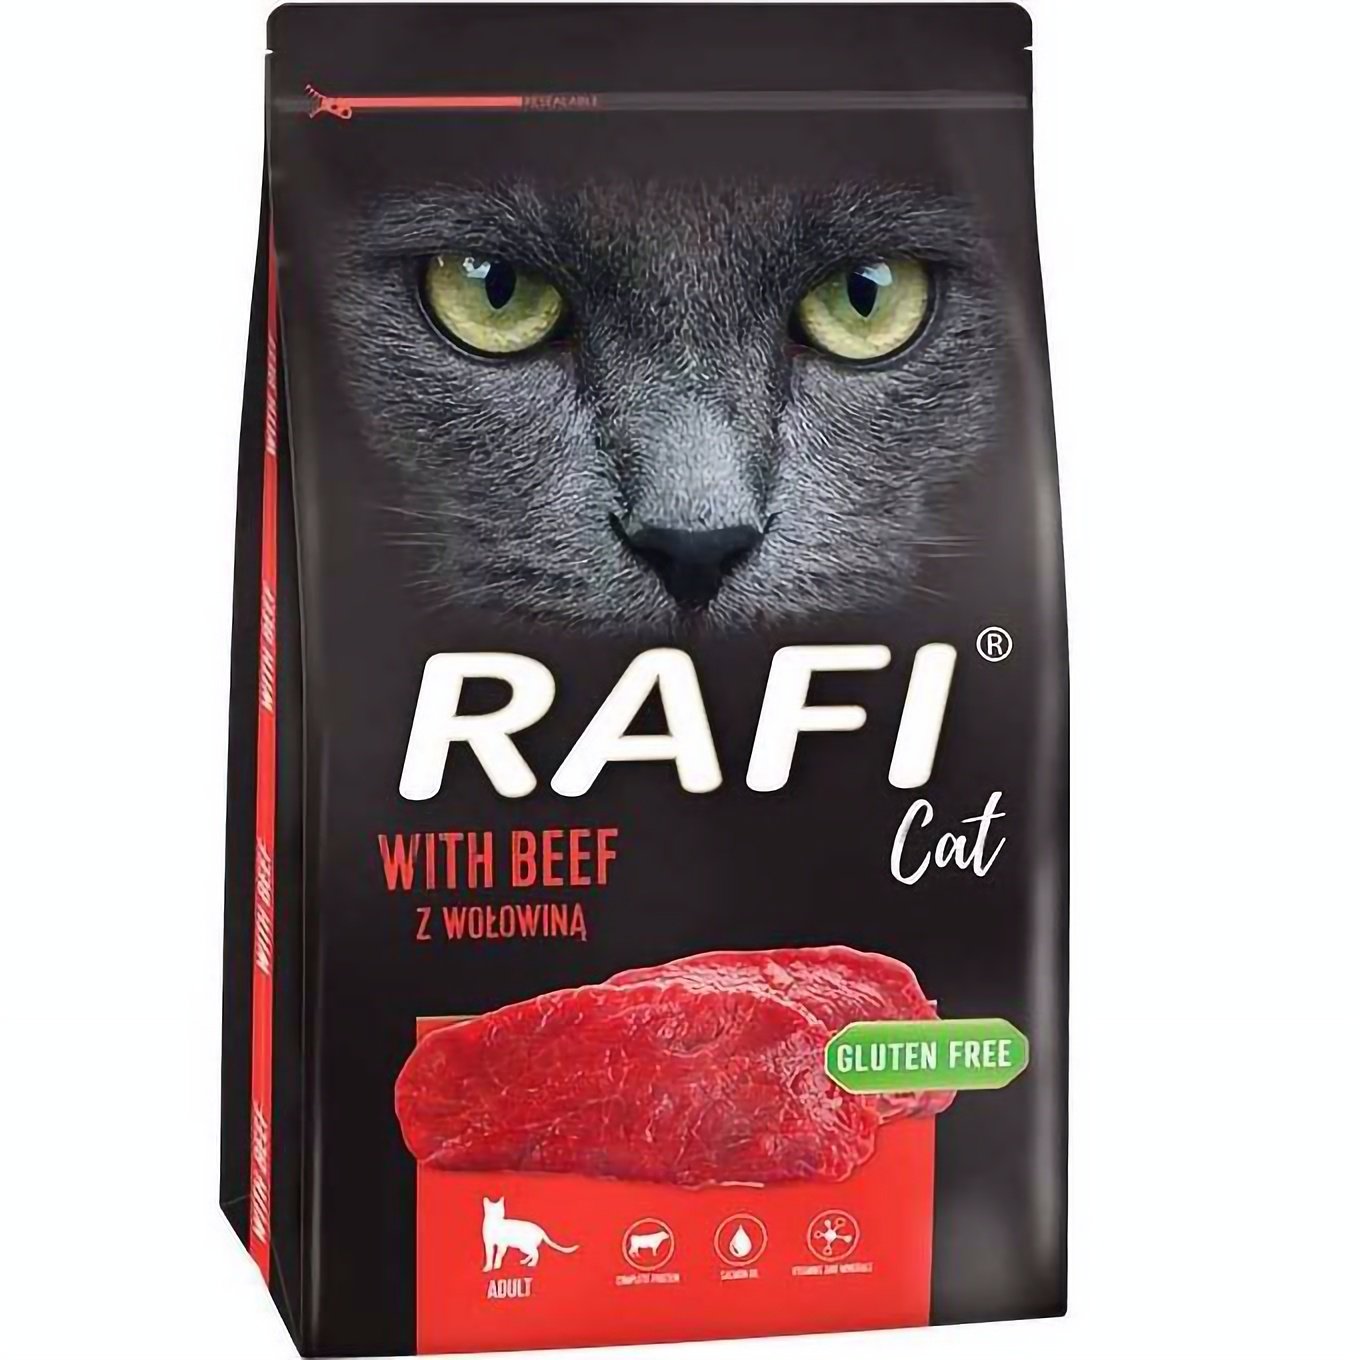 Сухий корм для дорослих котів Dolina Noteci Rafi Сat з яловичиною 7 кг - фото 1